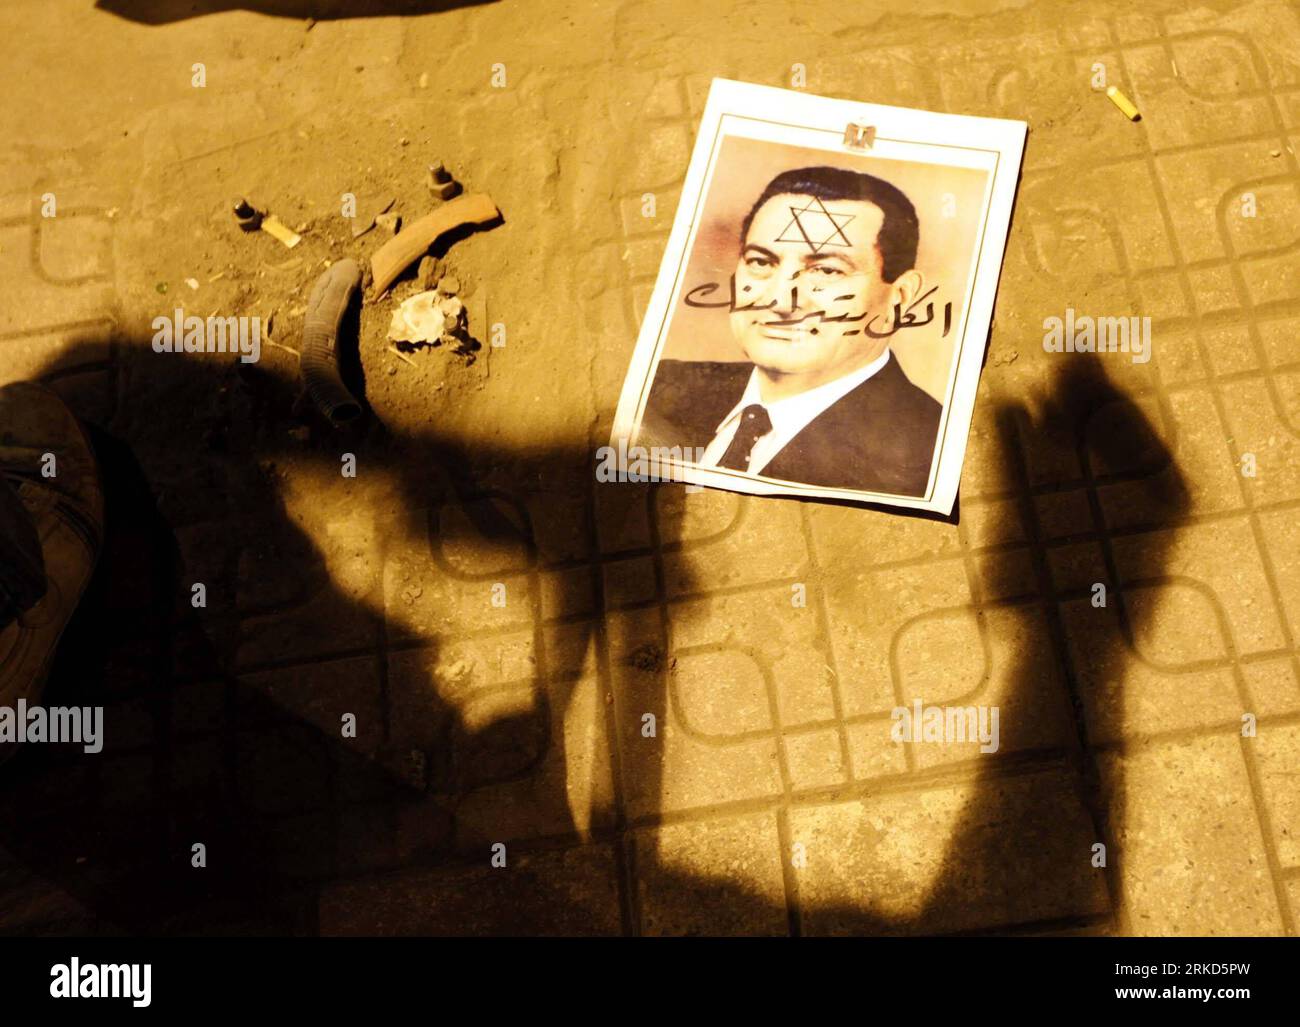 110130 -- LE CAIRE, 30 janvier 2011 Xinhua -- le portrait du président égyptien Hosni Moubarak est abandonné dans une rue lors d'une manifestation au Caire, capitale de l'Égypte, le 30 janvier 2011. Les manifestations anti-gouvernementales ont persisté dimanche pour le sixième jour à travers l'Égypte, alors que les manifestants exigeaient l'éviction du président Hosni Moubarak. Le couvre-feu ordonné par le gouvernement égyptien, auparavant de 4 heures à 8 heures, s'étend maintenant de 3 heures à 1300 heures GMT à 8 heures Xinhua/Cai Yang wjd EGYPTE-CAIRE-PROTESTATIONS PUBLICATIONxNOTxINxCHN Banque D'Images